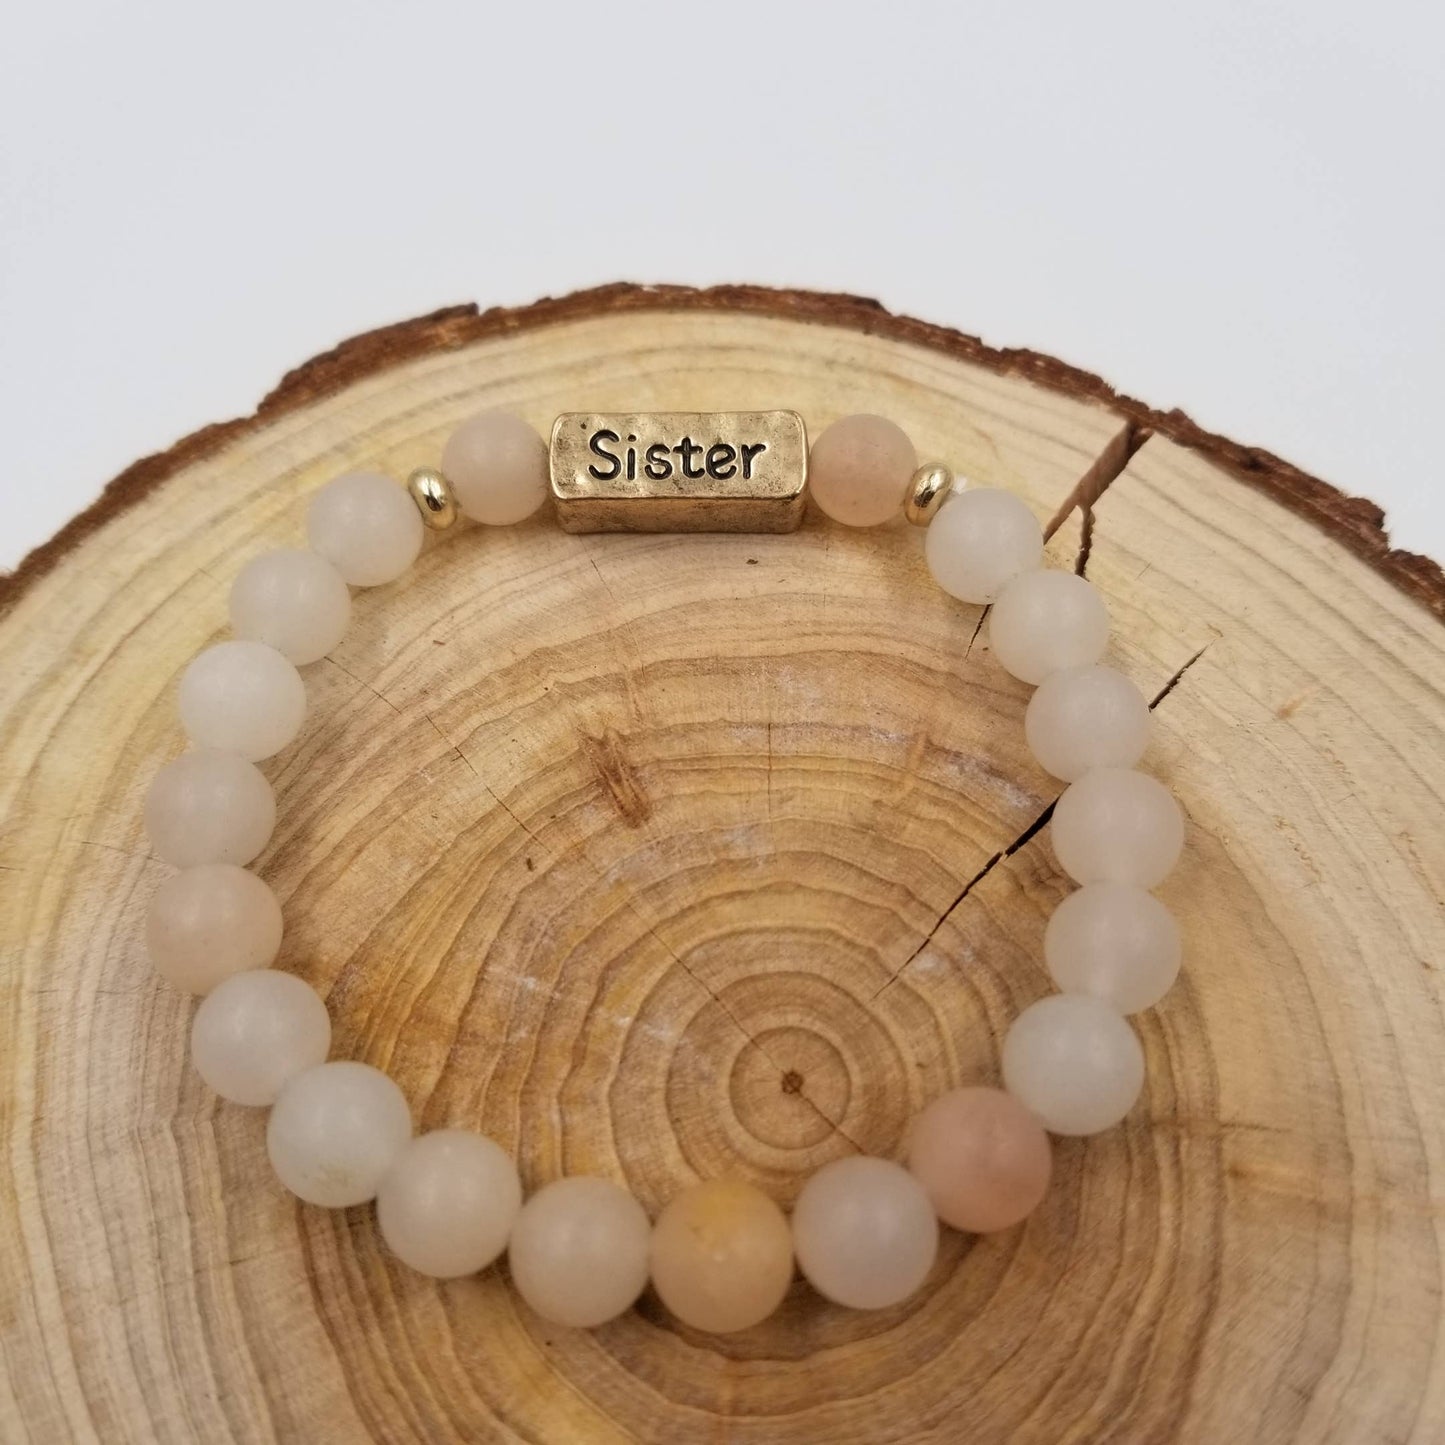 Sister Handmade Natural Stone Beaded Bracelet